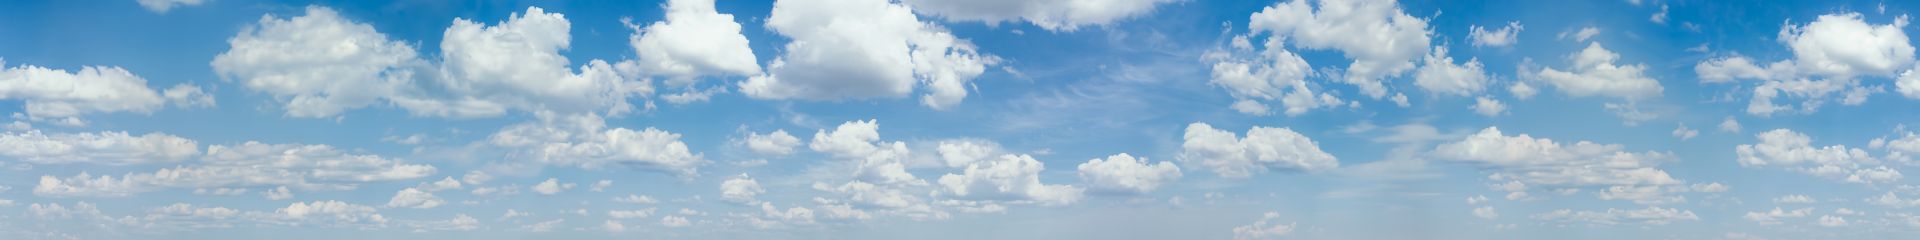 elriwa M4-H100-C - Hintergrundplatte aus PVC-Hartschaum 'Himmel mit Wolken', Höhe 100 cm, Bild C